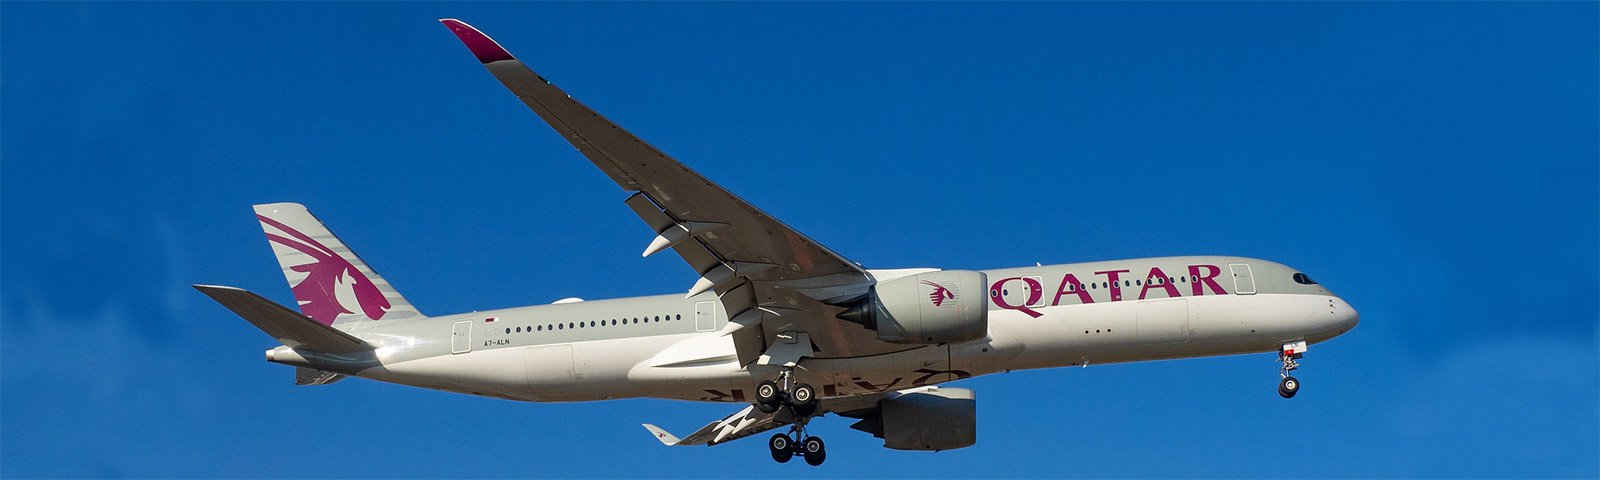 aereoplano qatar in decollo